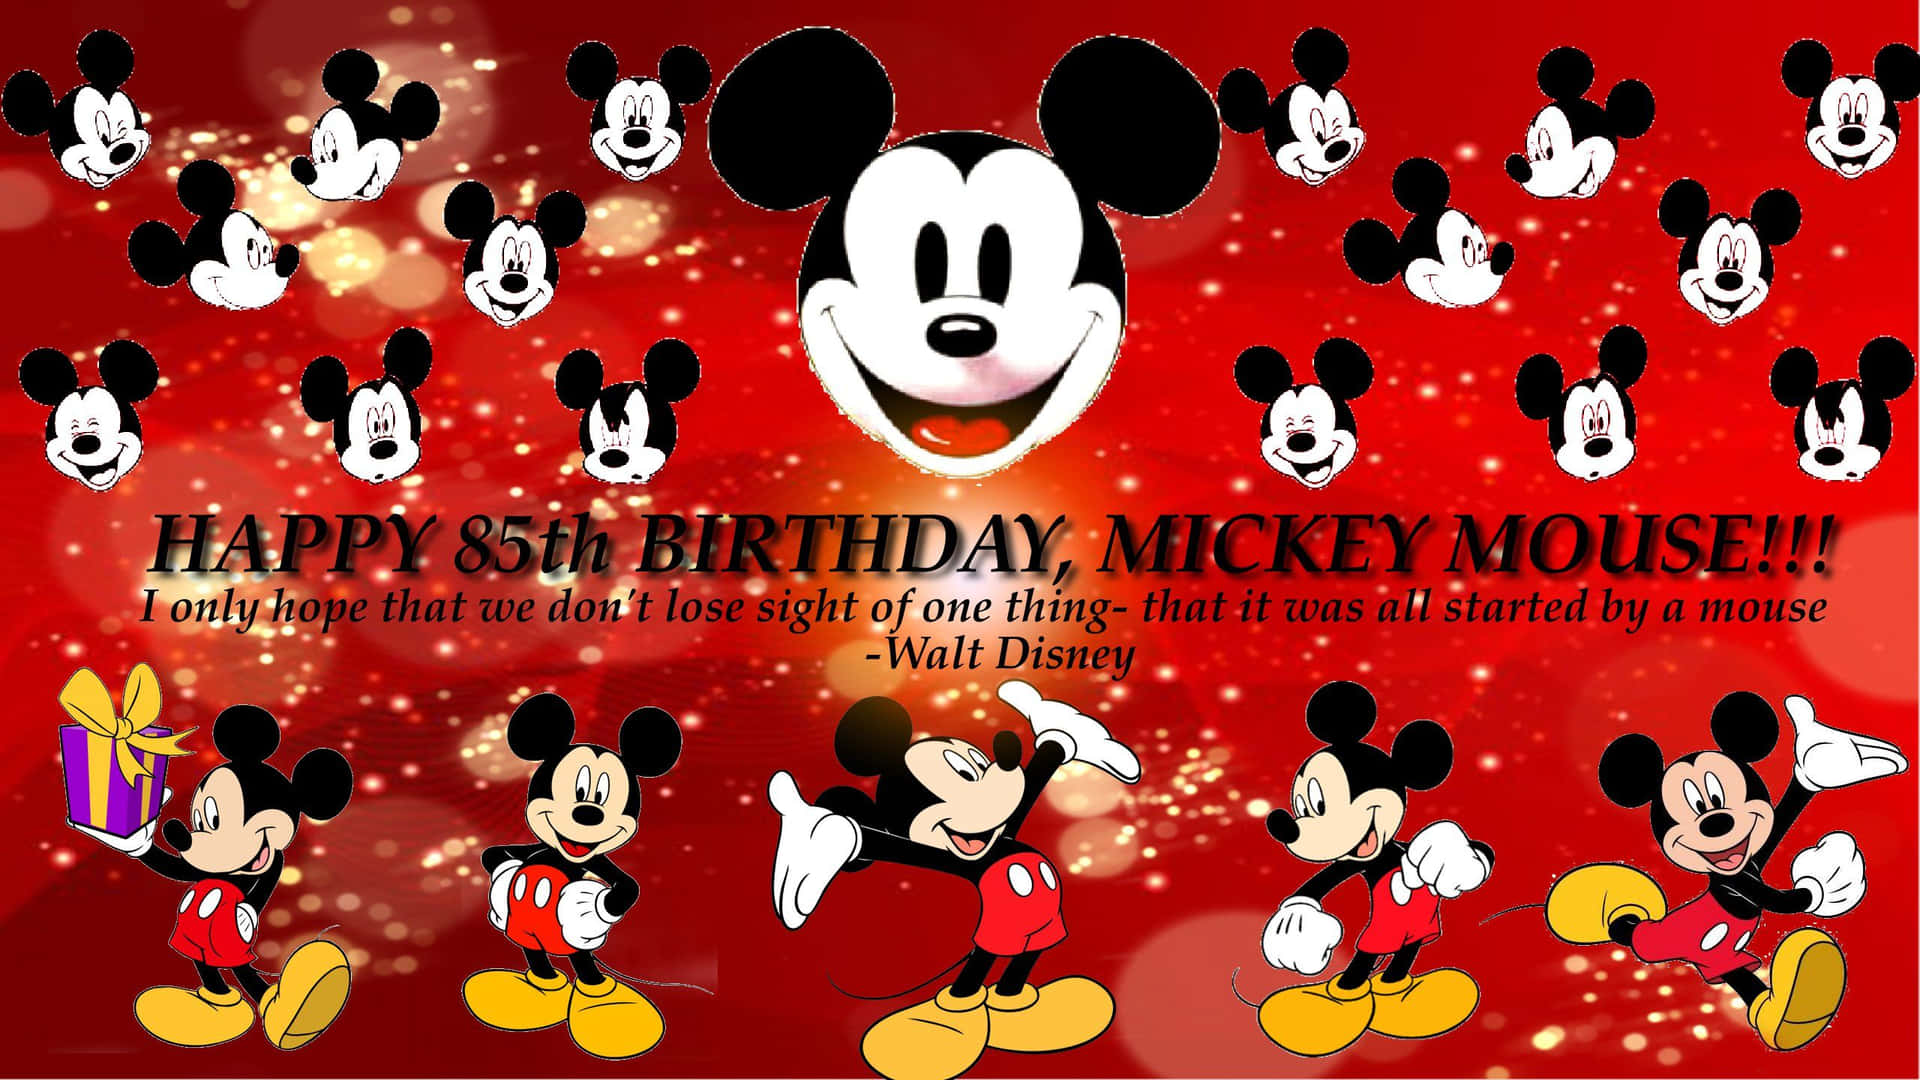 Disney Birthday 2560 X 1440 Background